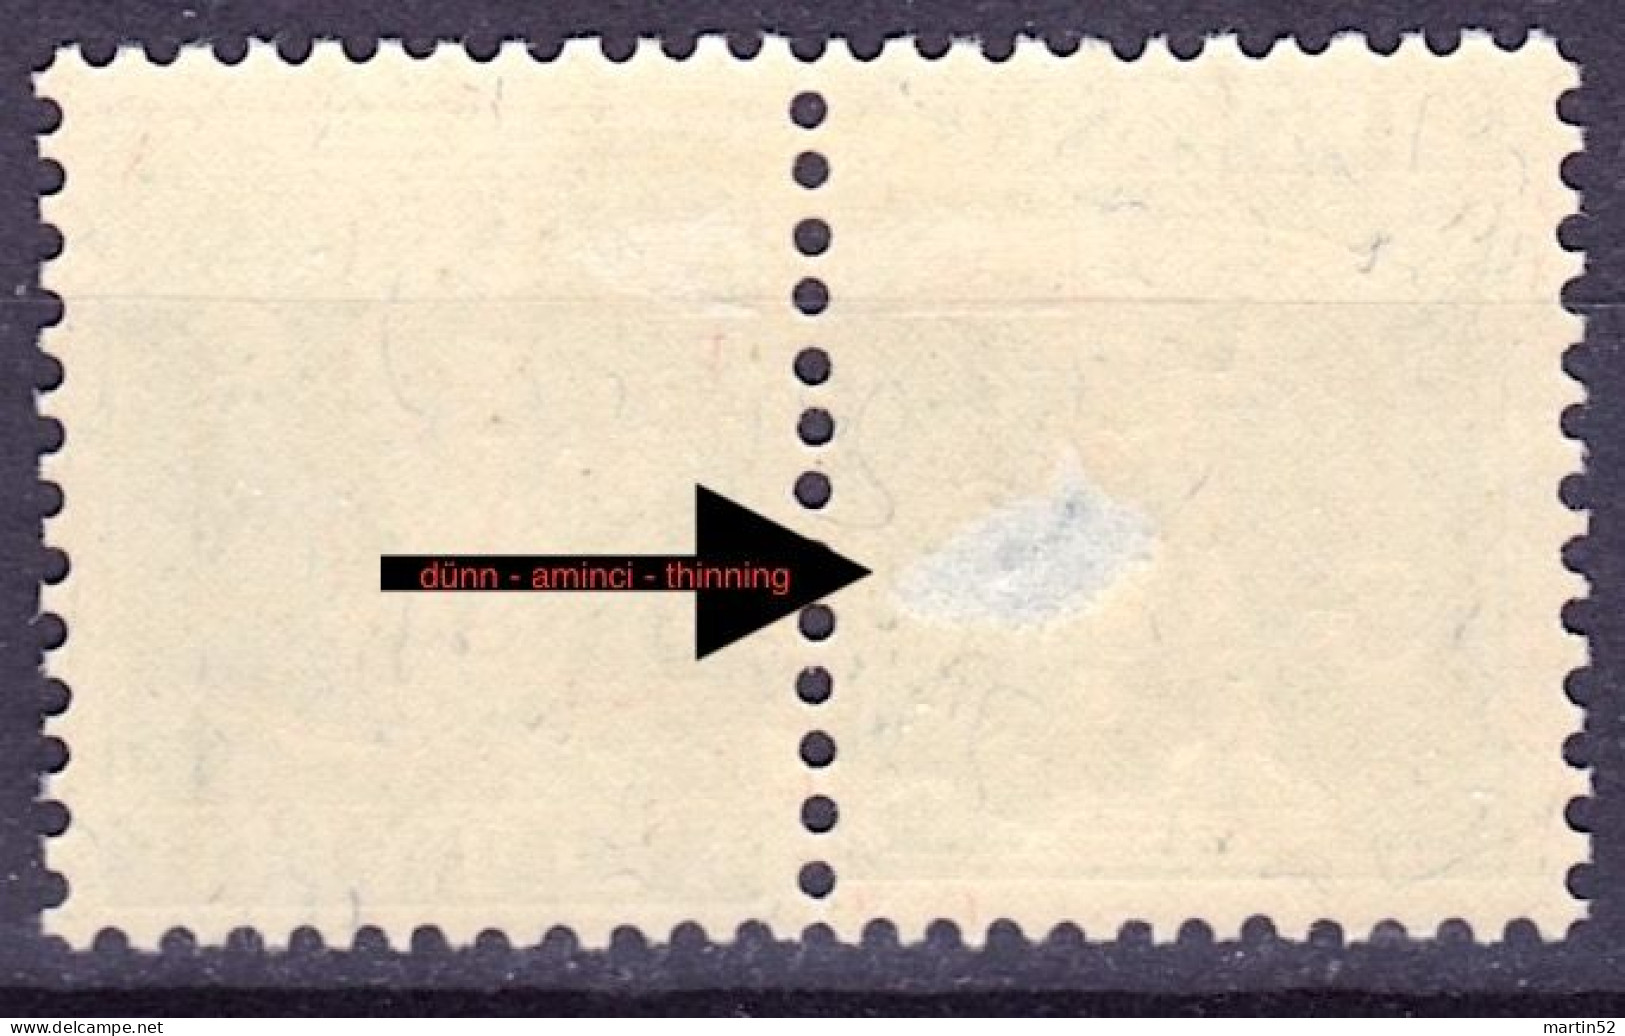 Schweiz Suisse 1909: Sehne VOR Schaft (5c) Kehrdruck Tête-bêche Zu K3 Mi K5 Type I  * Falz Trace MLH (Zu CHF 40.00 -50%) - Tête-bêche